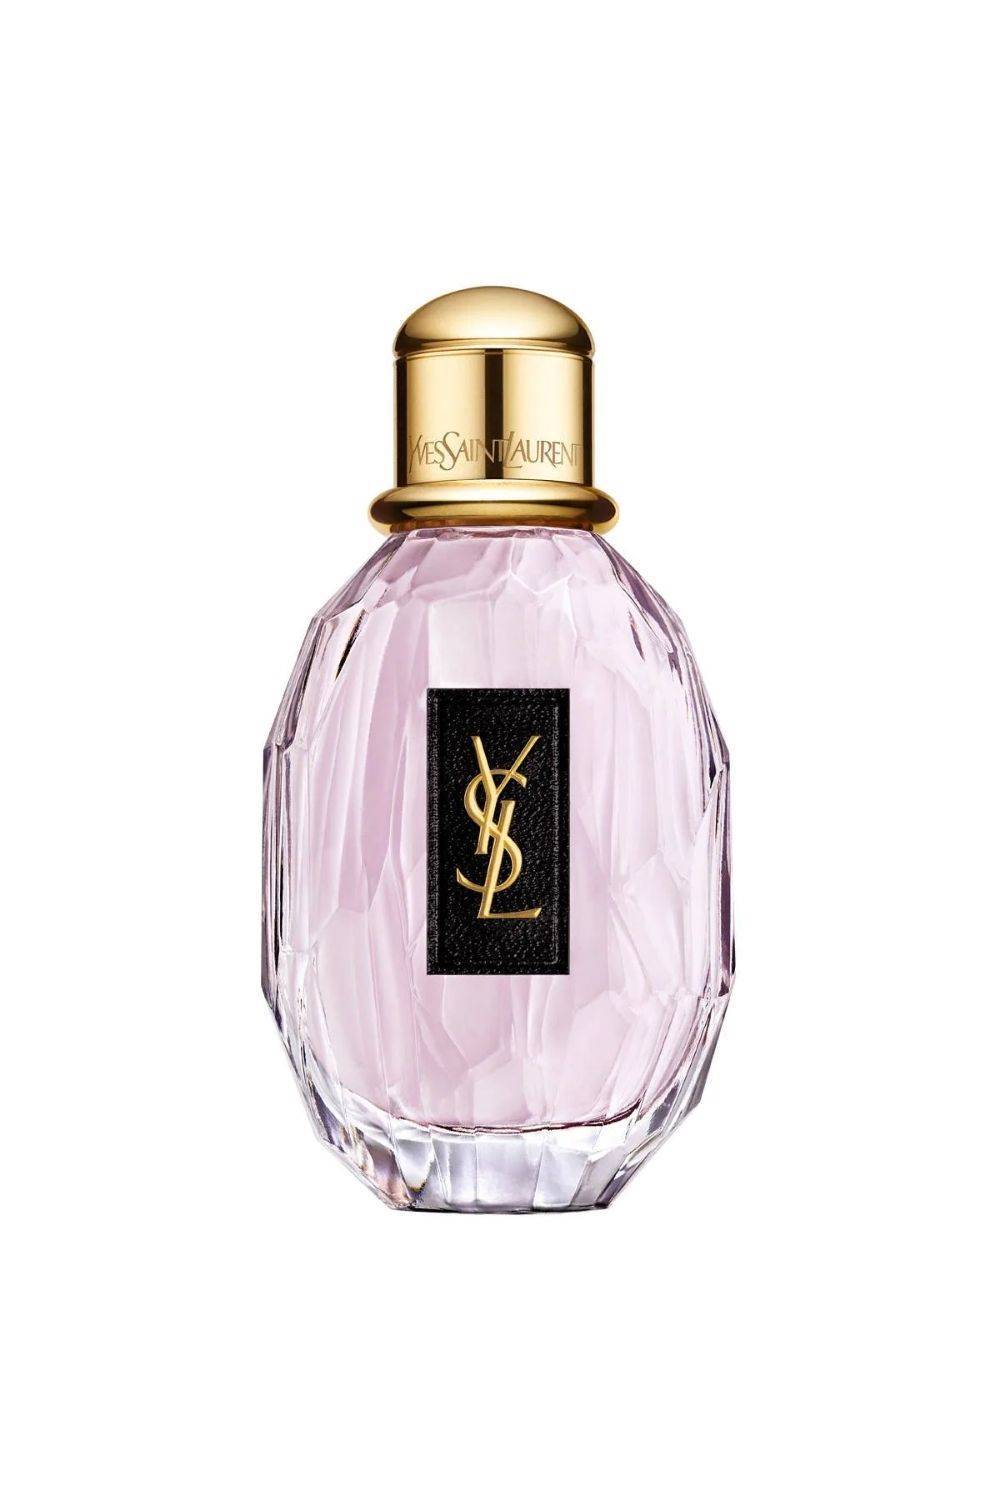 Perfumes con olor a talco: Parisienne de Yves Saint Laurent